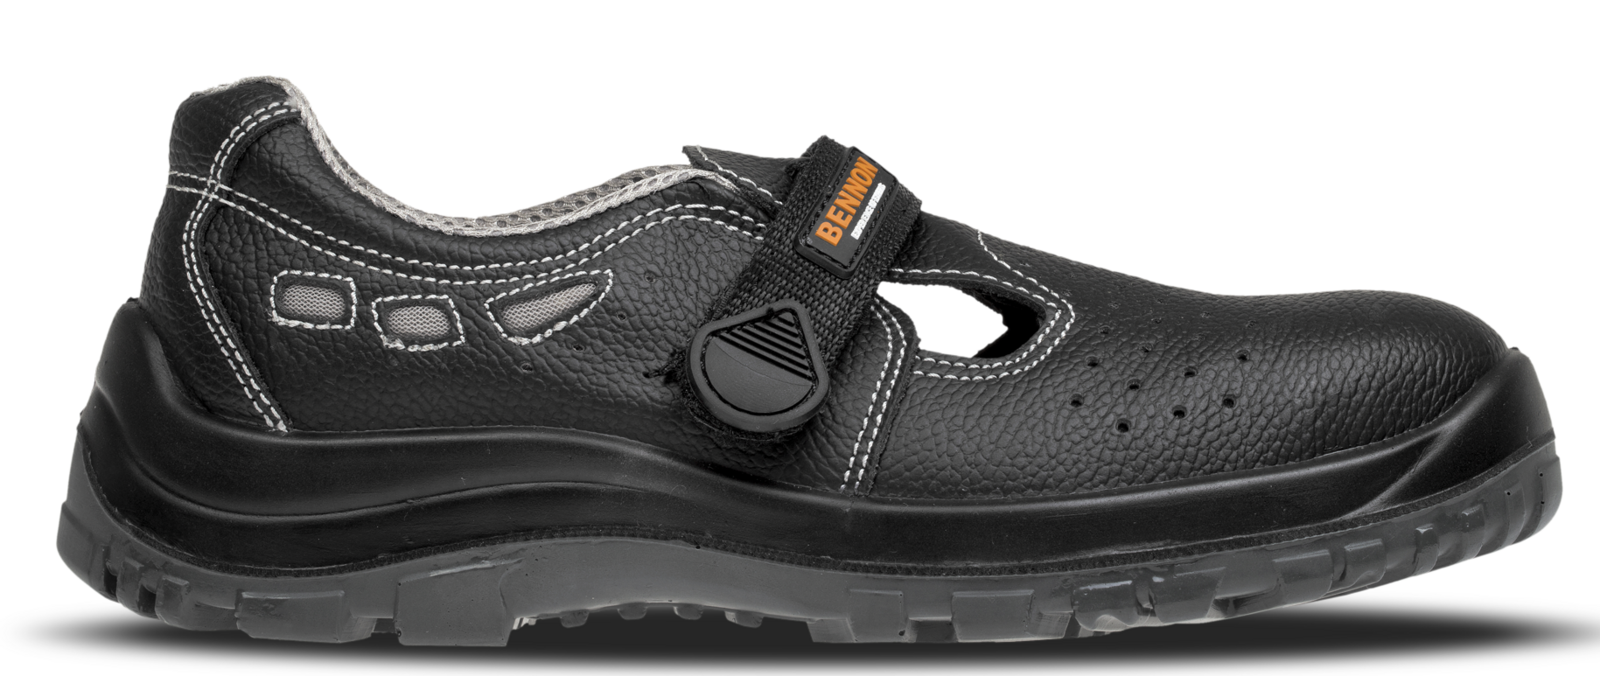 Bezpečnostné sandále Bennon Basic S1 - veľkosť: 36, farba: čierna